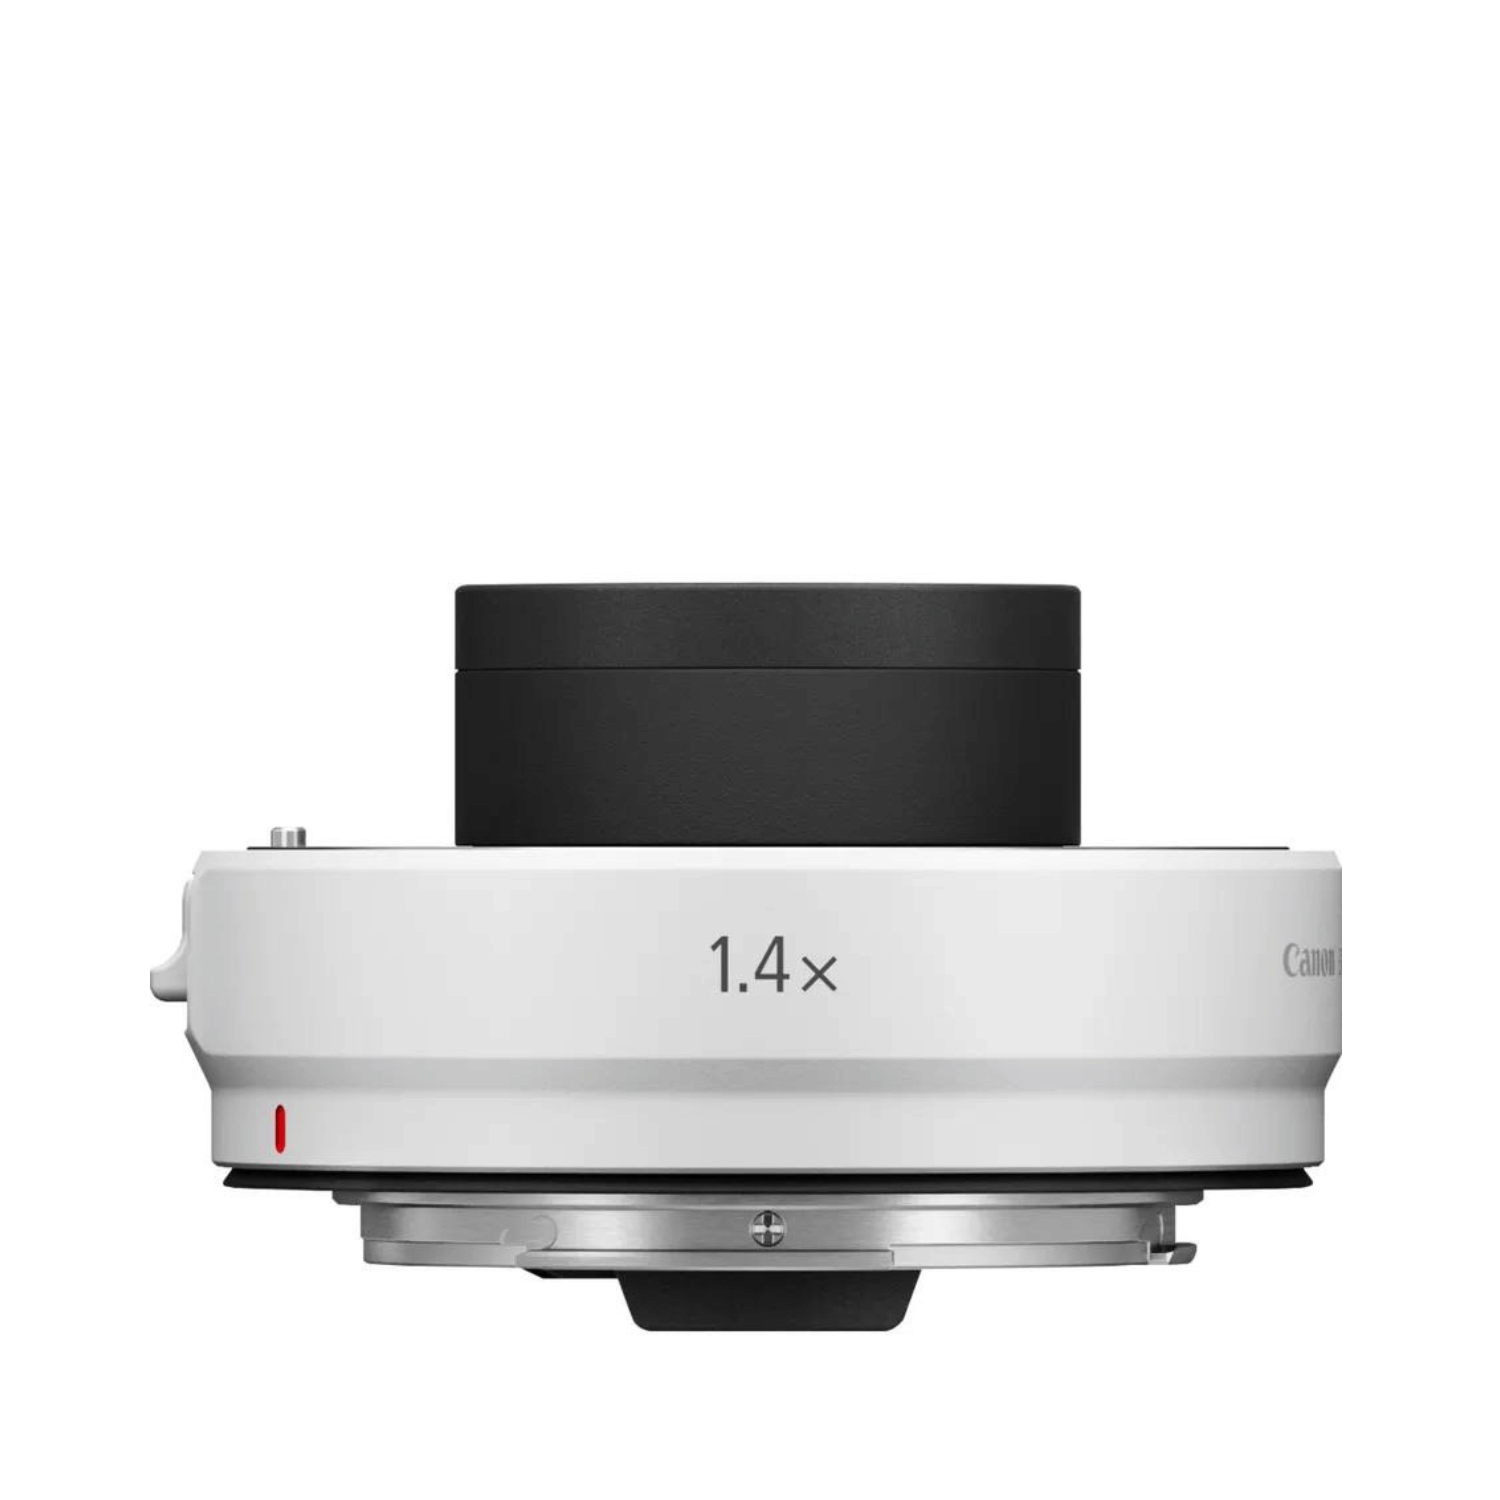 Canon RF Extender 1.4x- Gar. Canon Italia -Cine Sud è da 48 anni sul mercato! 4113C005